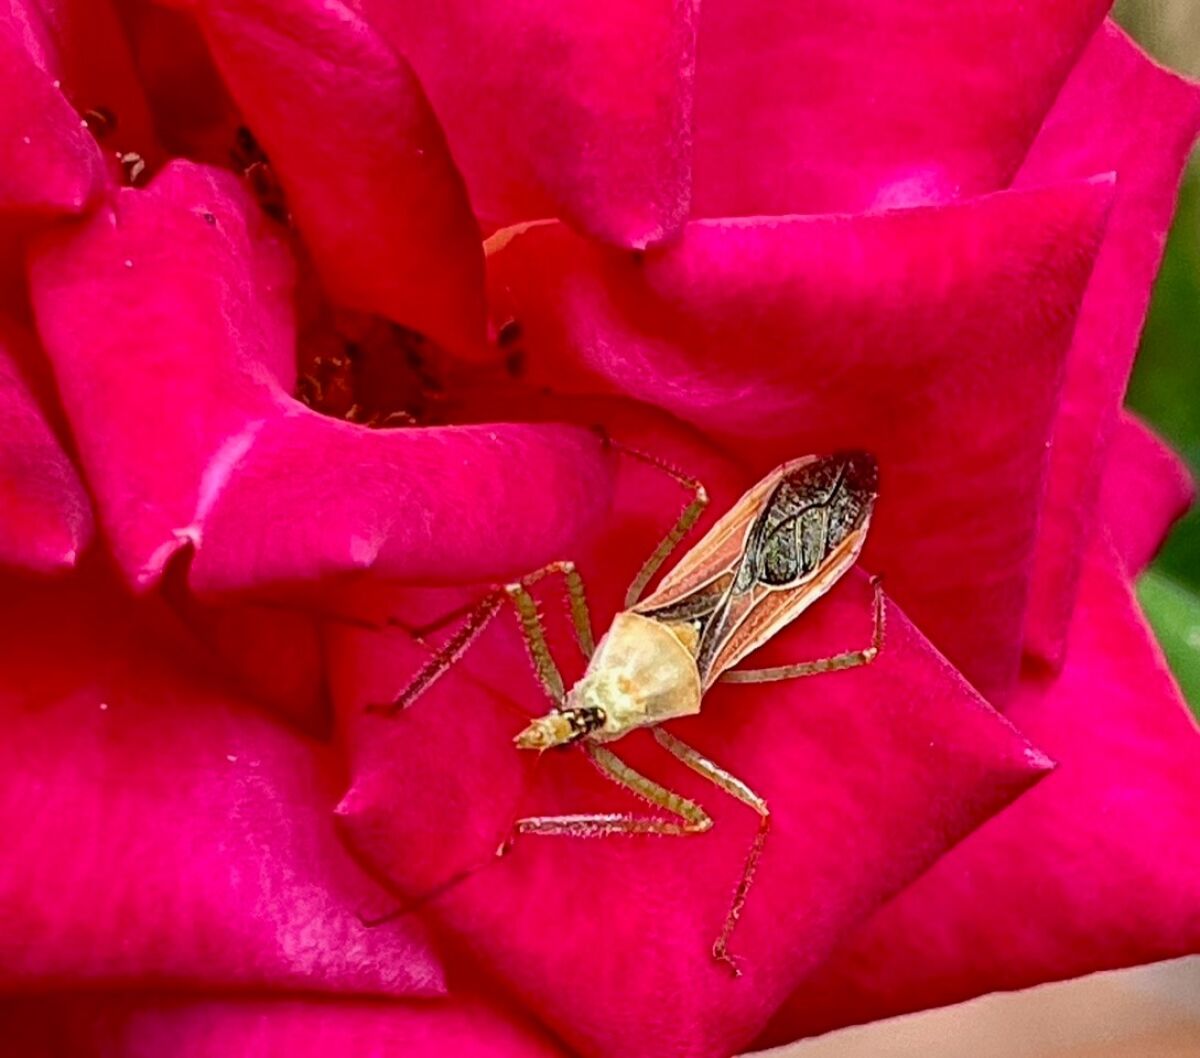 An assassin bug on a pink flower.